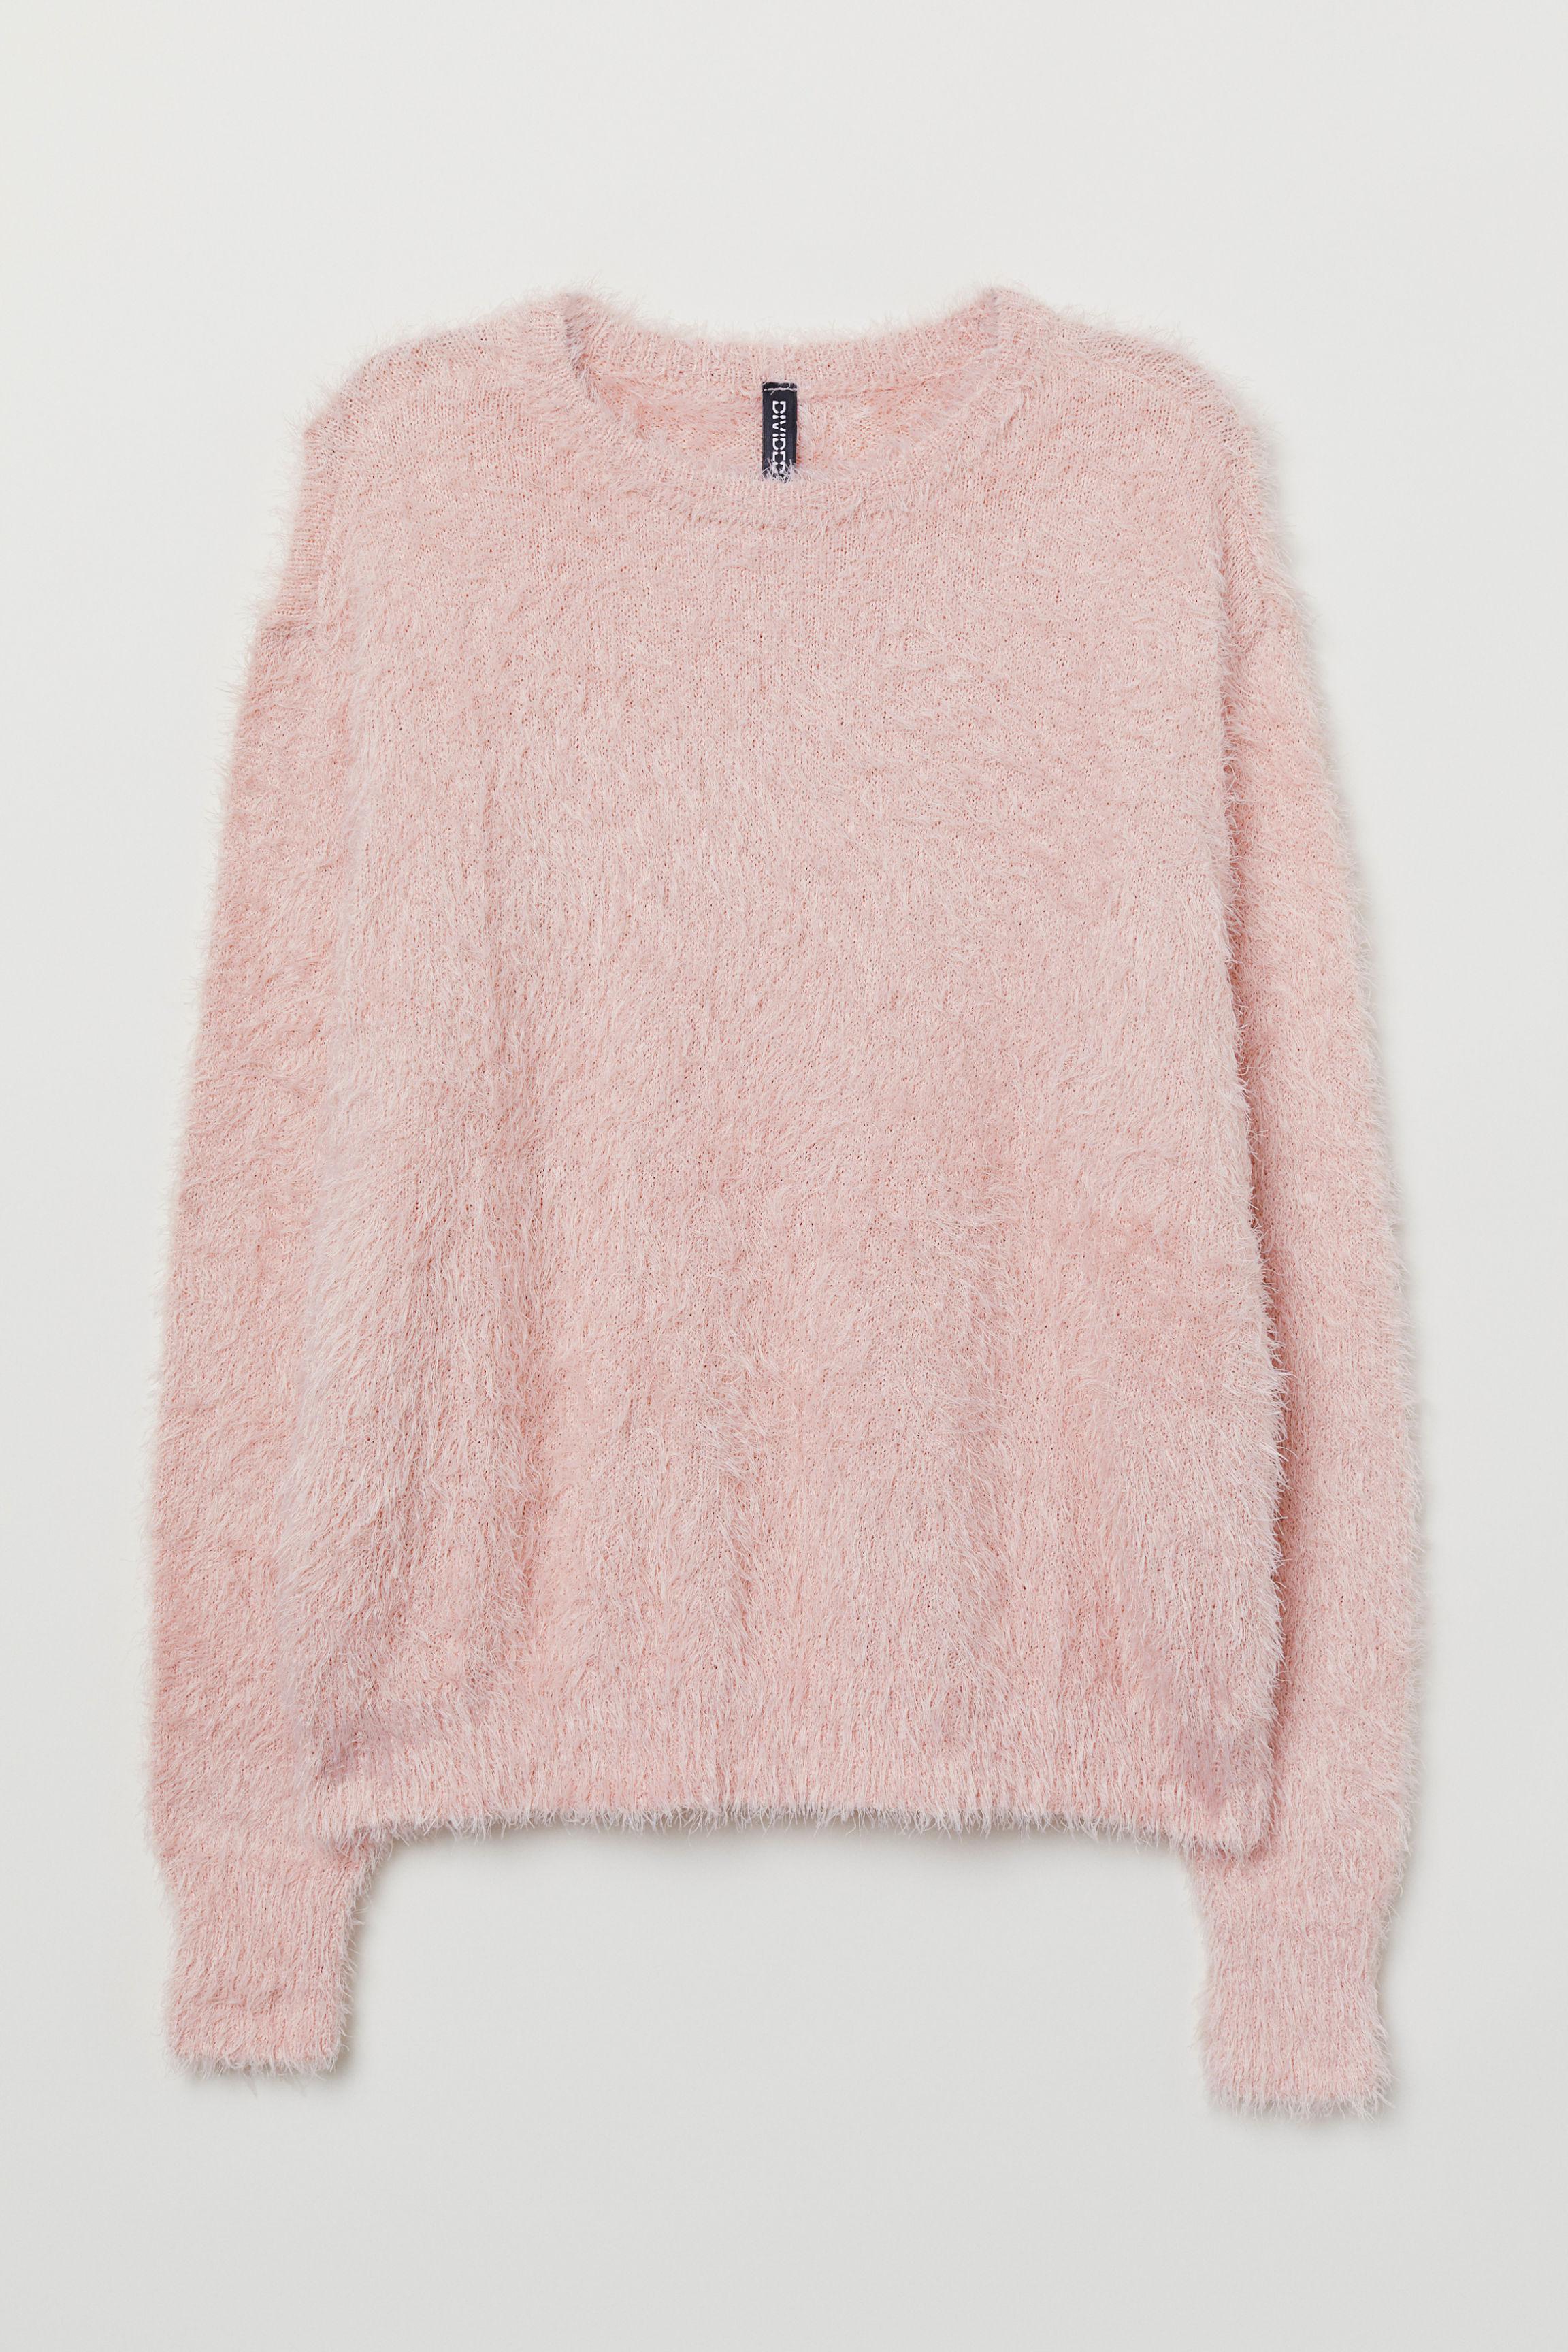 Песни розовый свитер. Розовый пушистый свитер. Розовый свитер. Пушистый розовый джемпер. Кофта пушистая h&m.